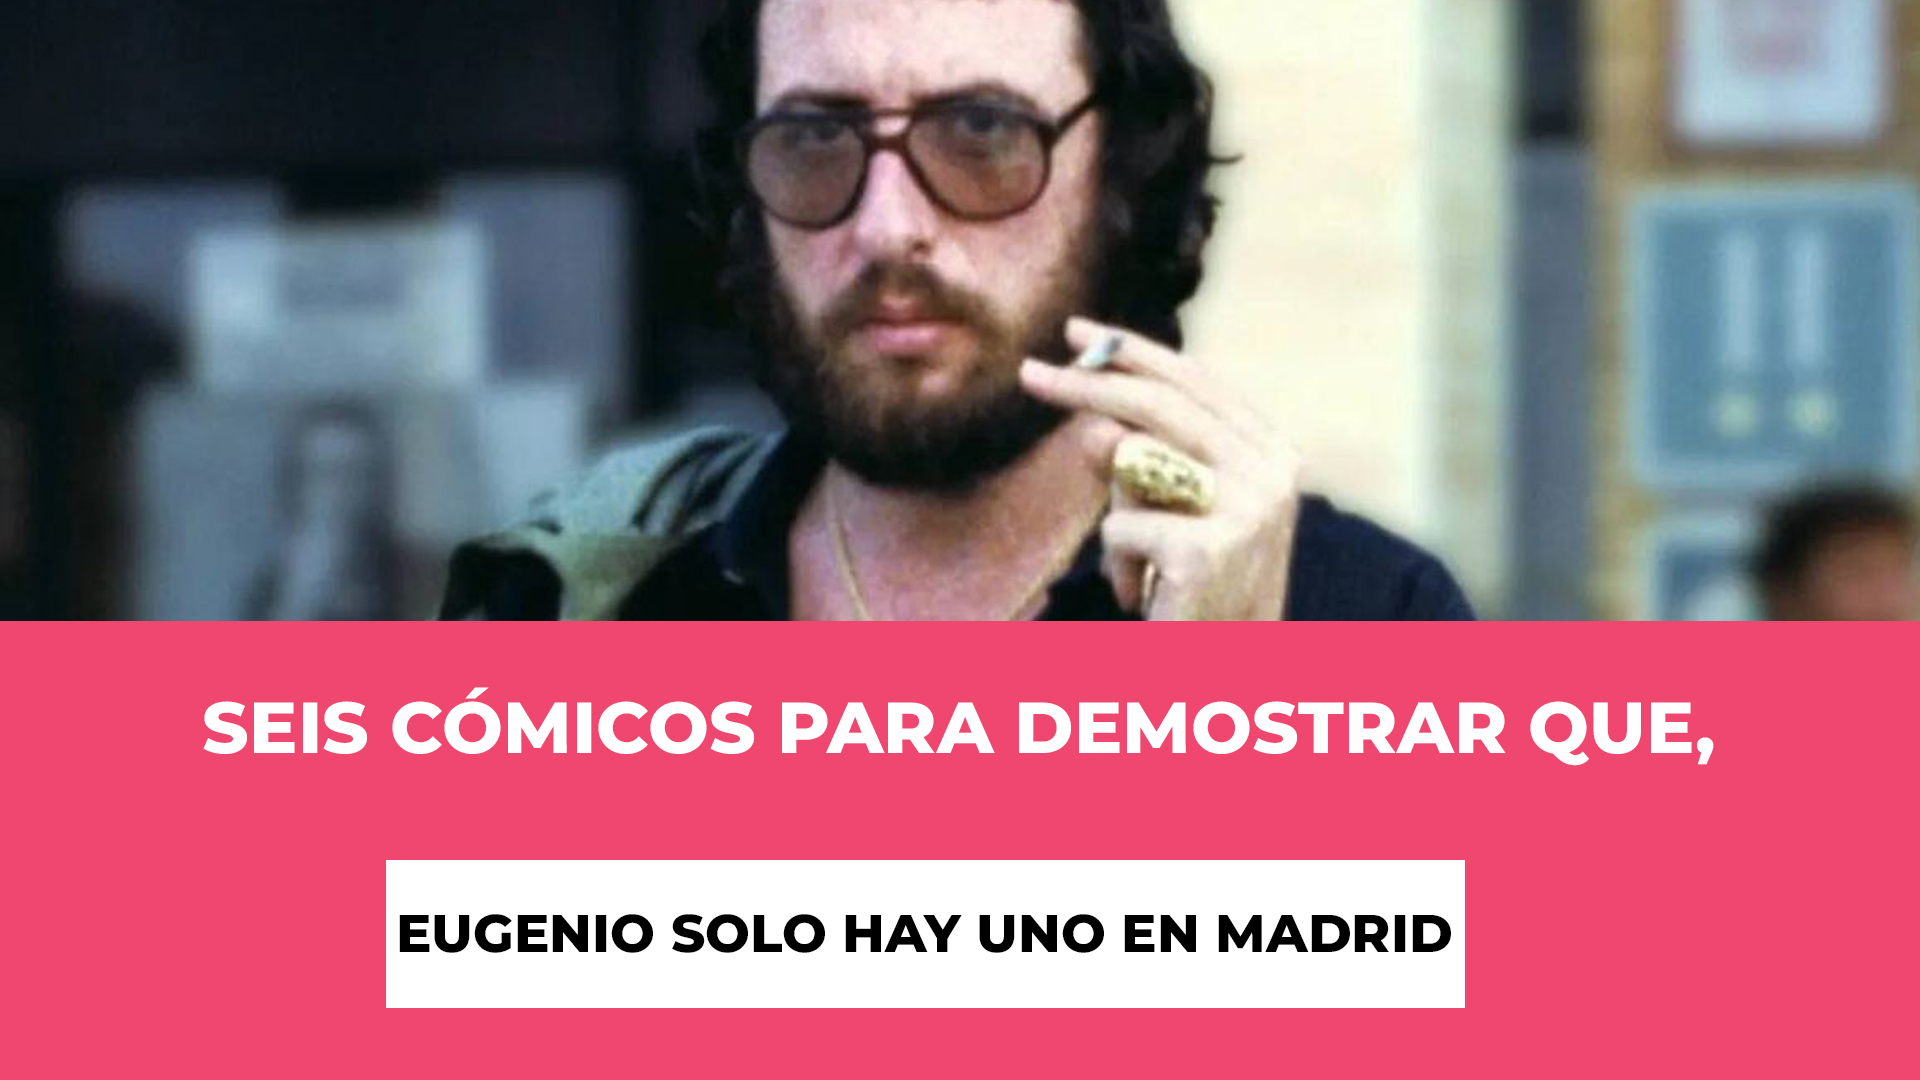 Seis cómicos para demostrar que, Eugenio solo hay uno en Madrid - Una única función - Horario - Fecha - Ubicación - 6 cómicos juntos